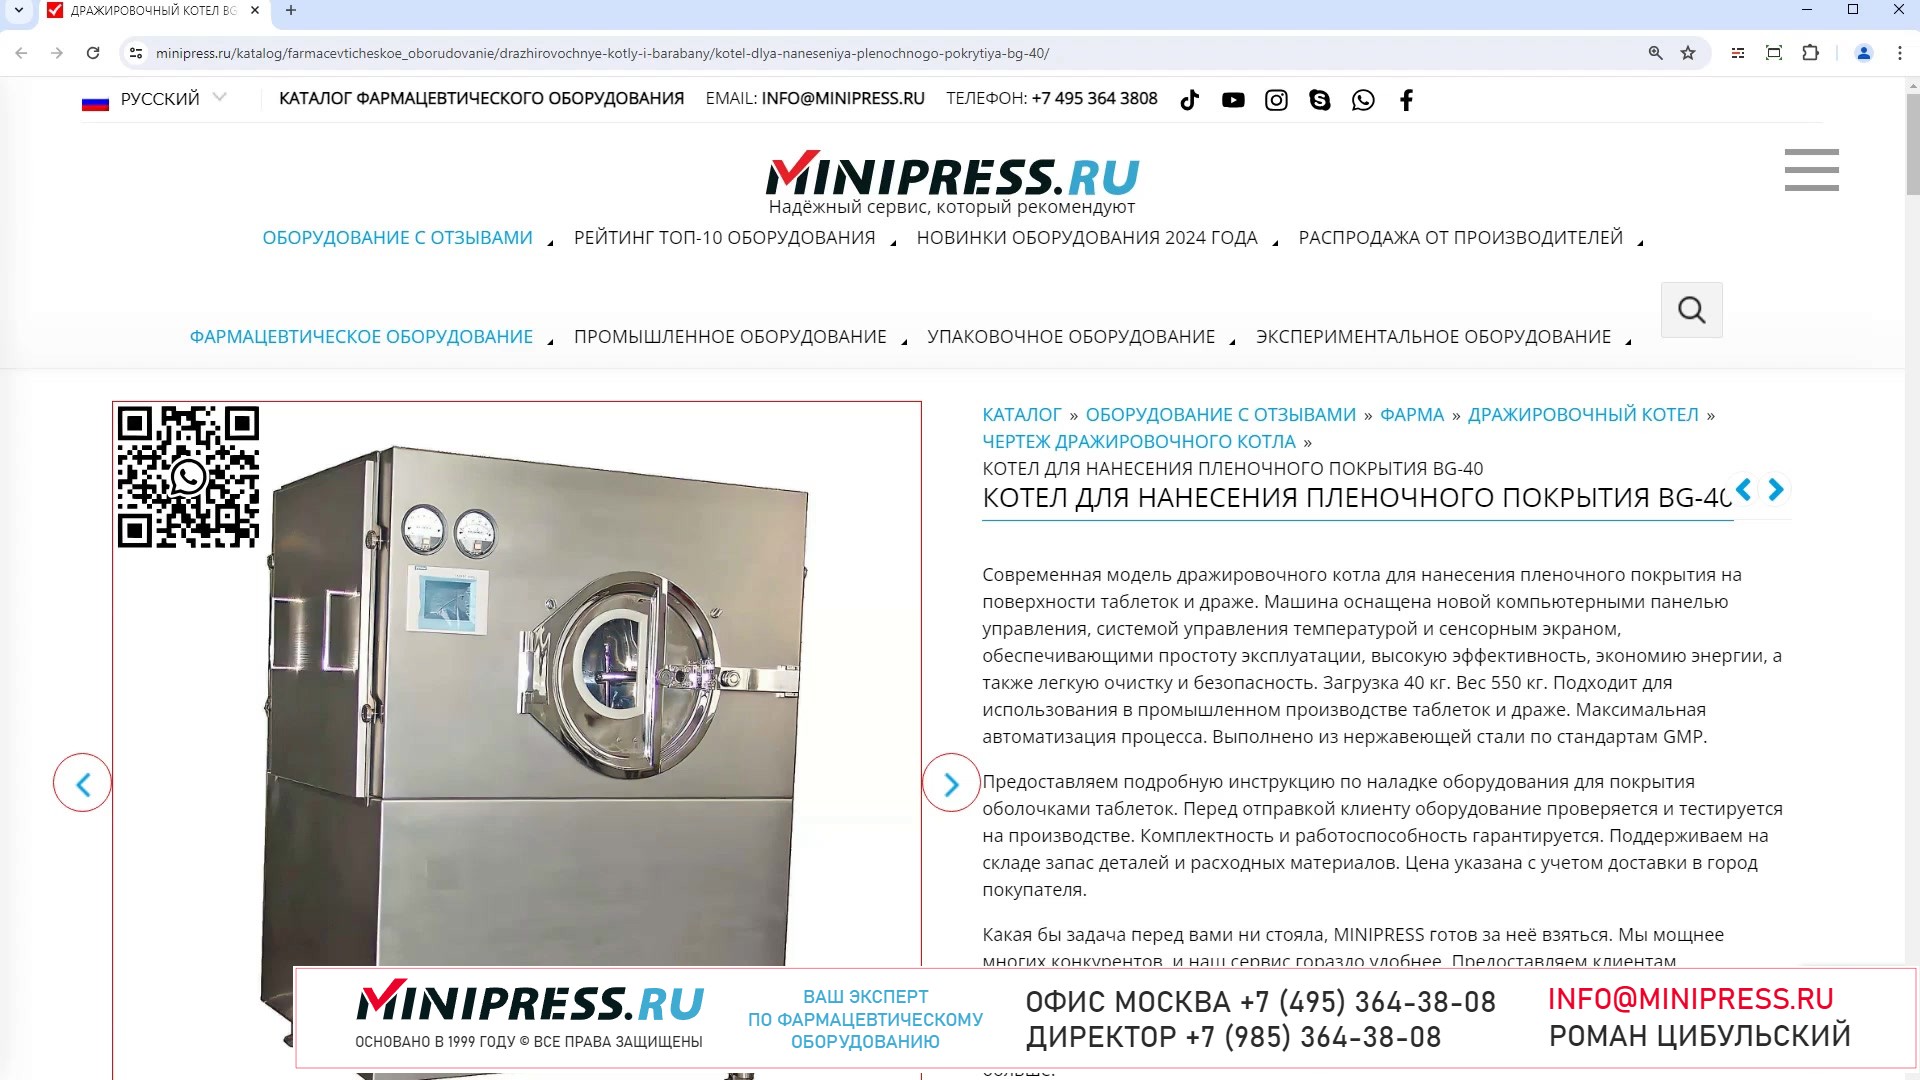 Minipress.ru Котел для нанесения пленочного покрытия BG-40